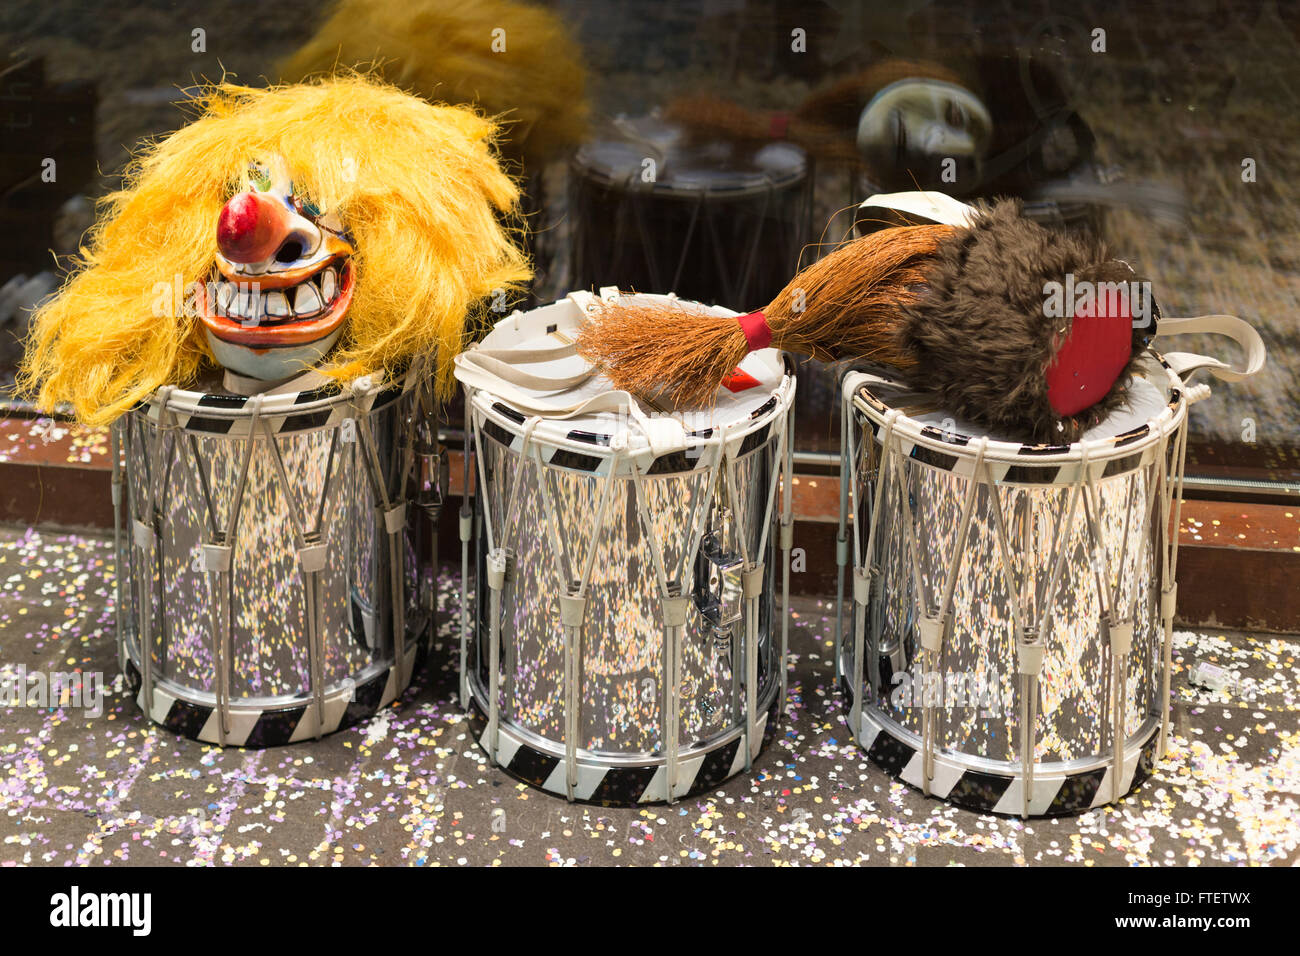 Tre rullanti con maschere recante sulla parte superiore durante il Carnevale di Basilea 2016 davanti alla vetrina di un negozio. Foto Stock